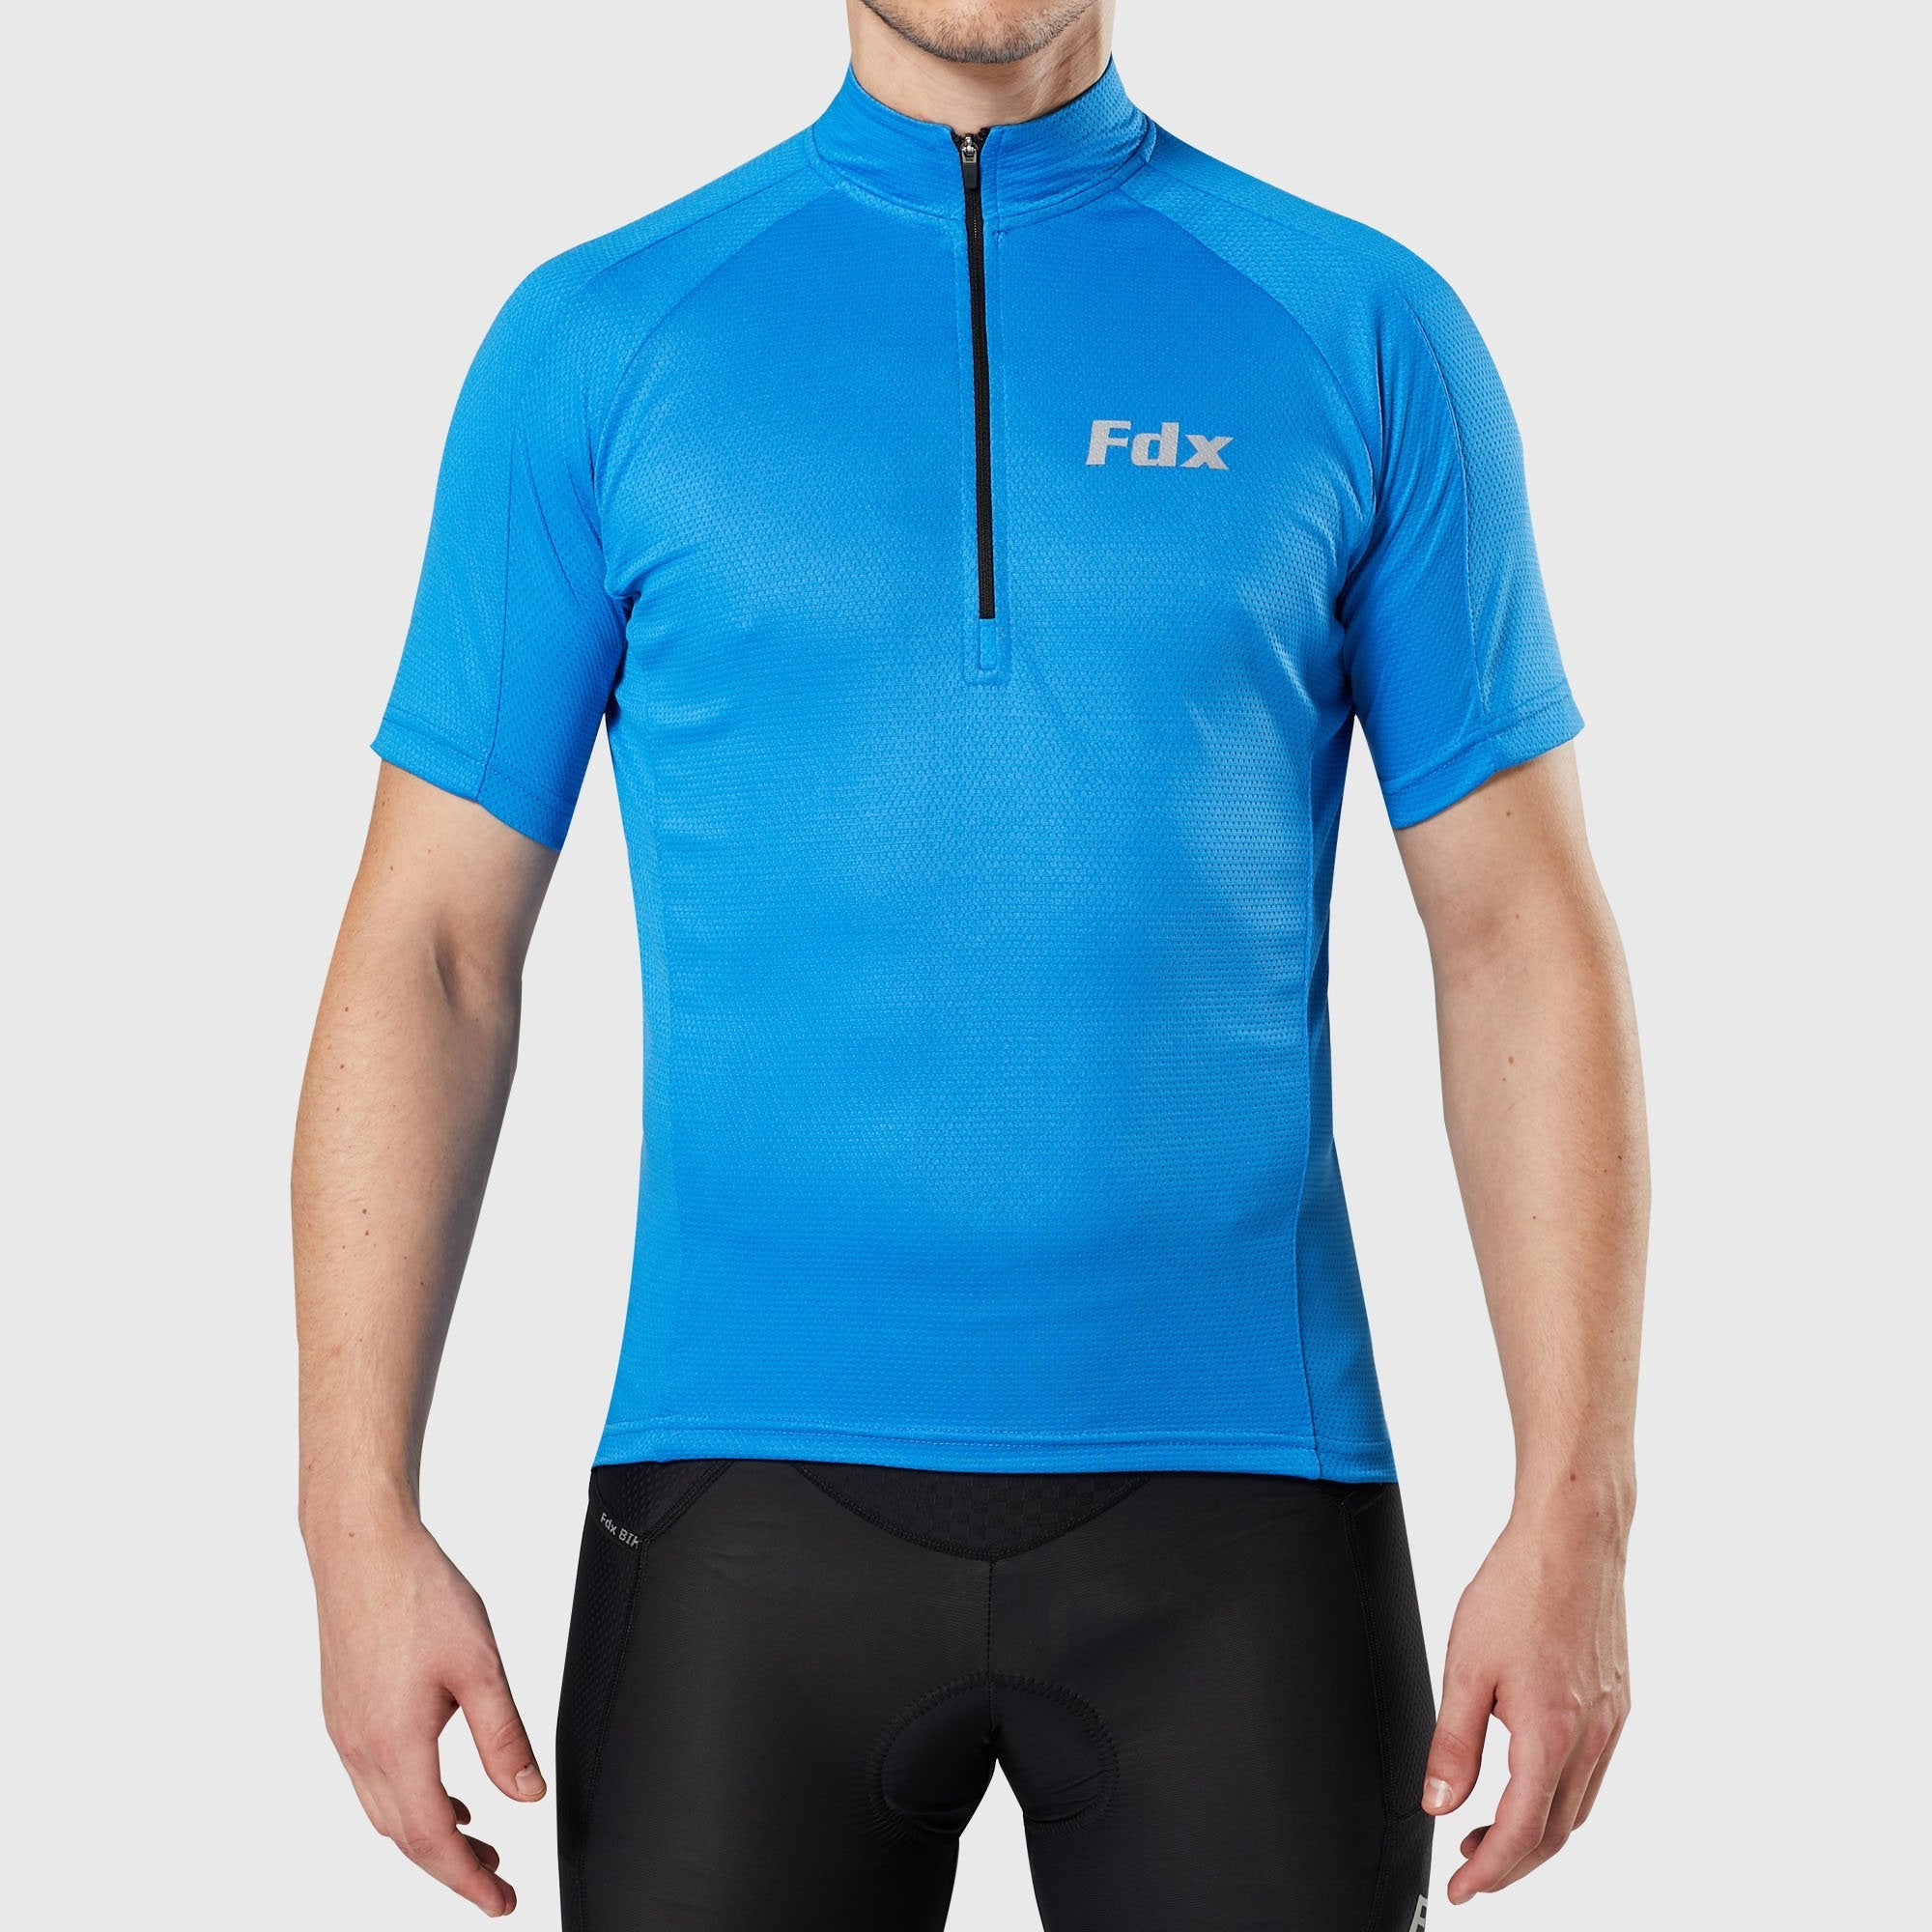 Fdx Pace Blue Men's Short Sleeve Summer Cycling Jersey